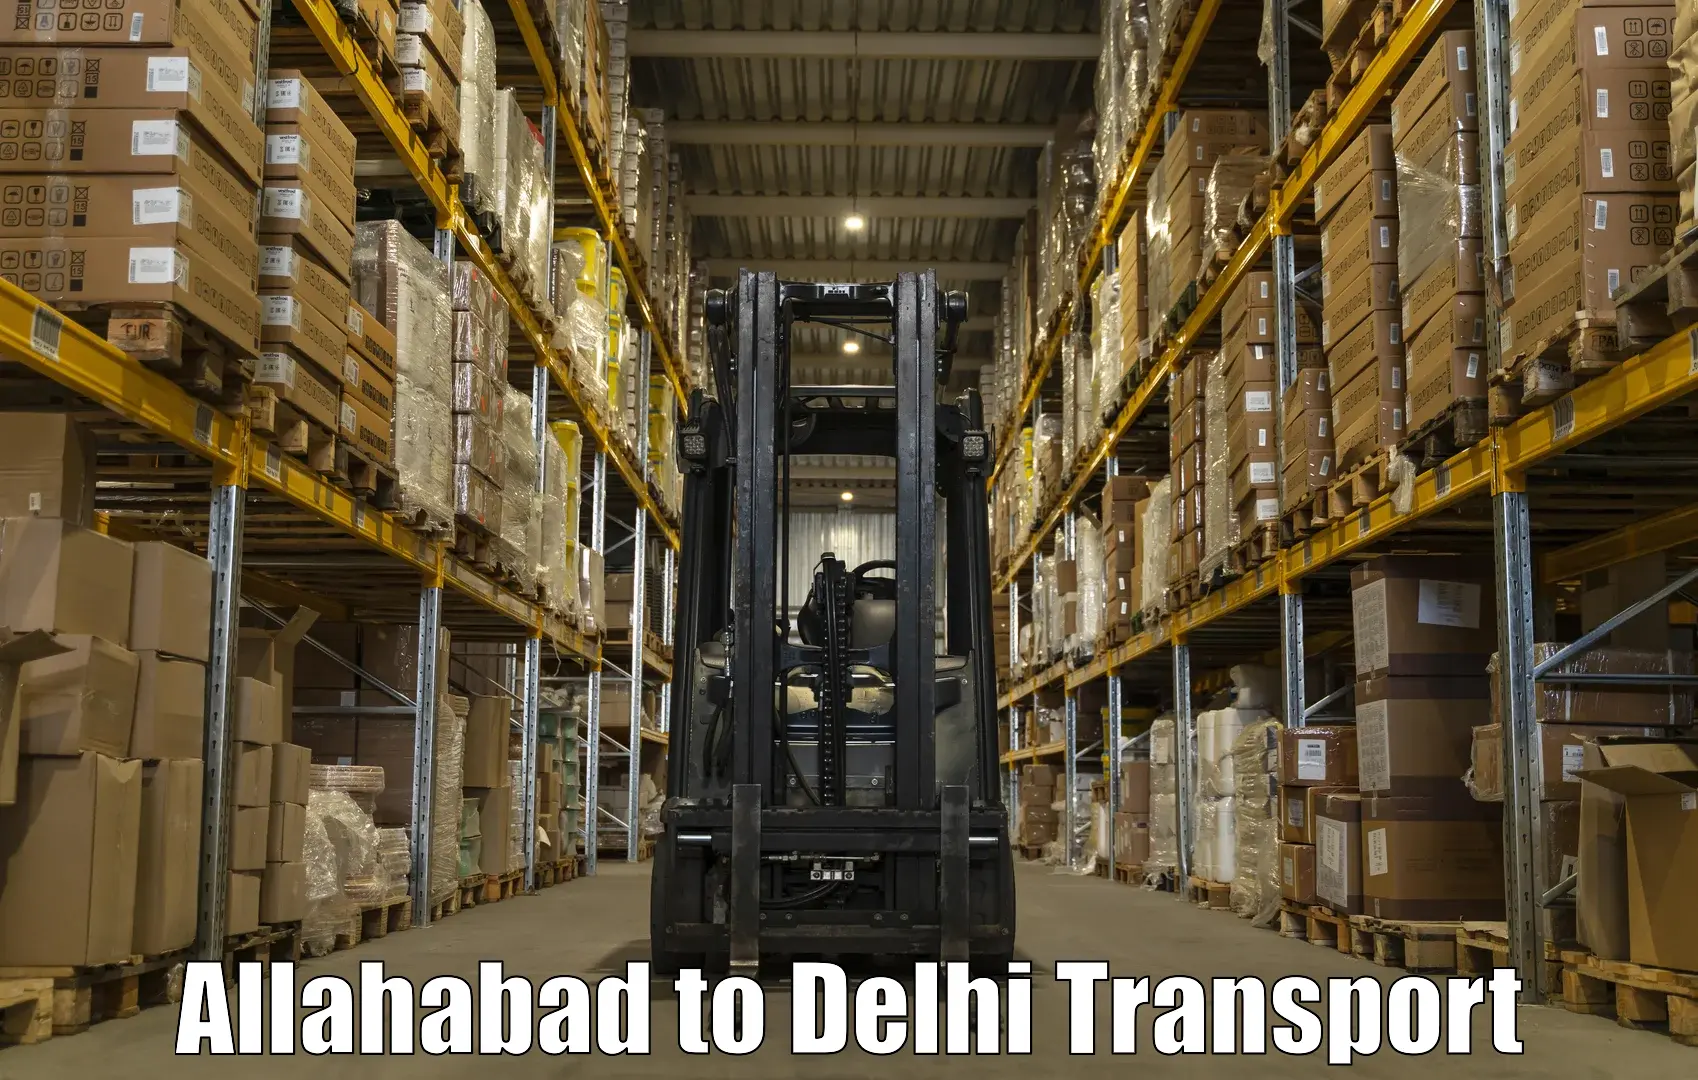 Transport in sharing Allahabad to University of Delhi